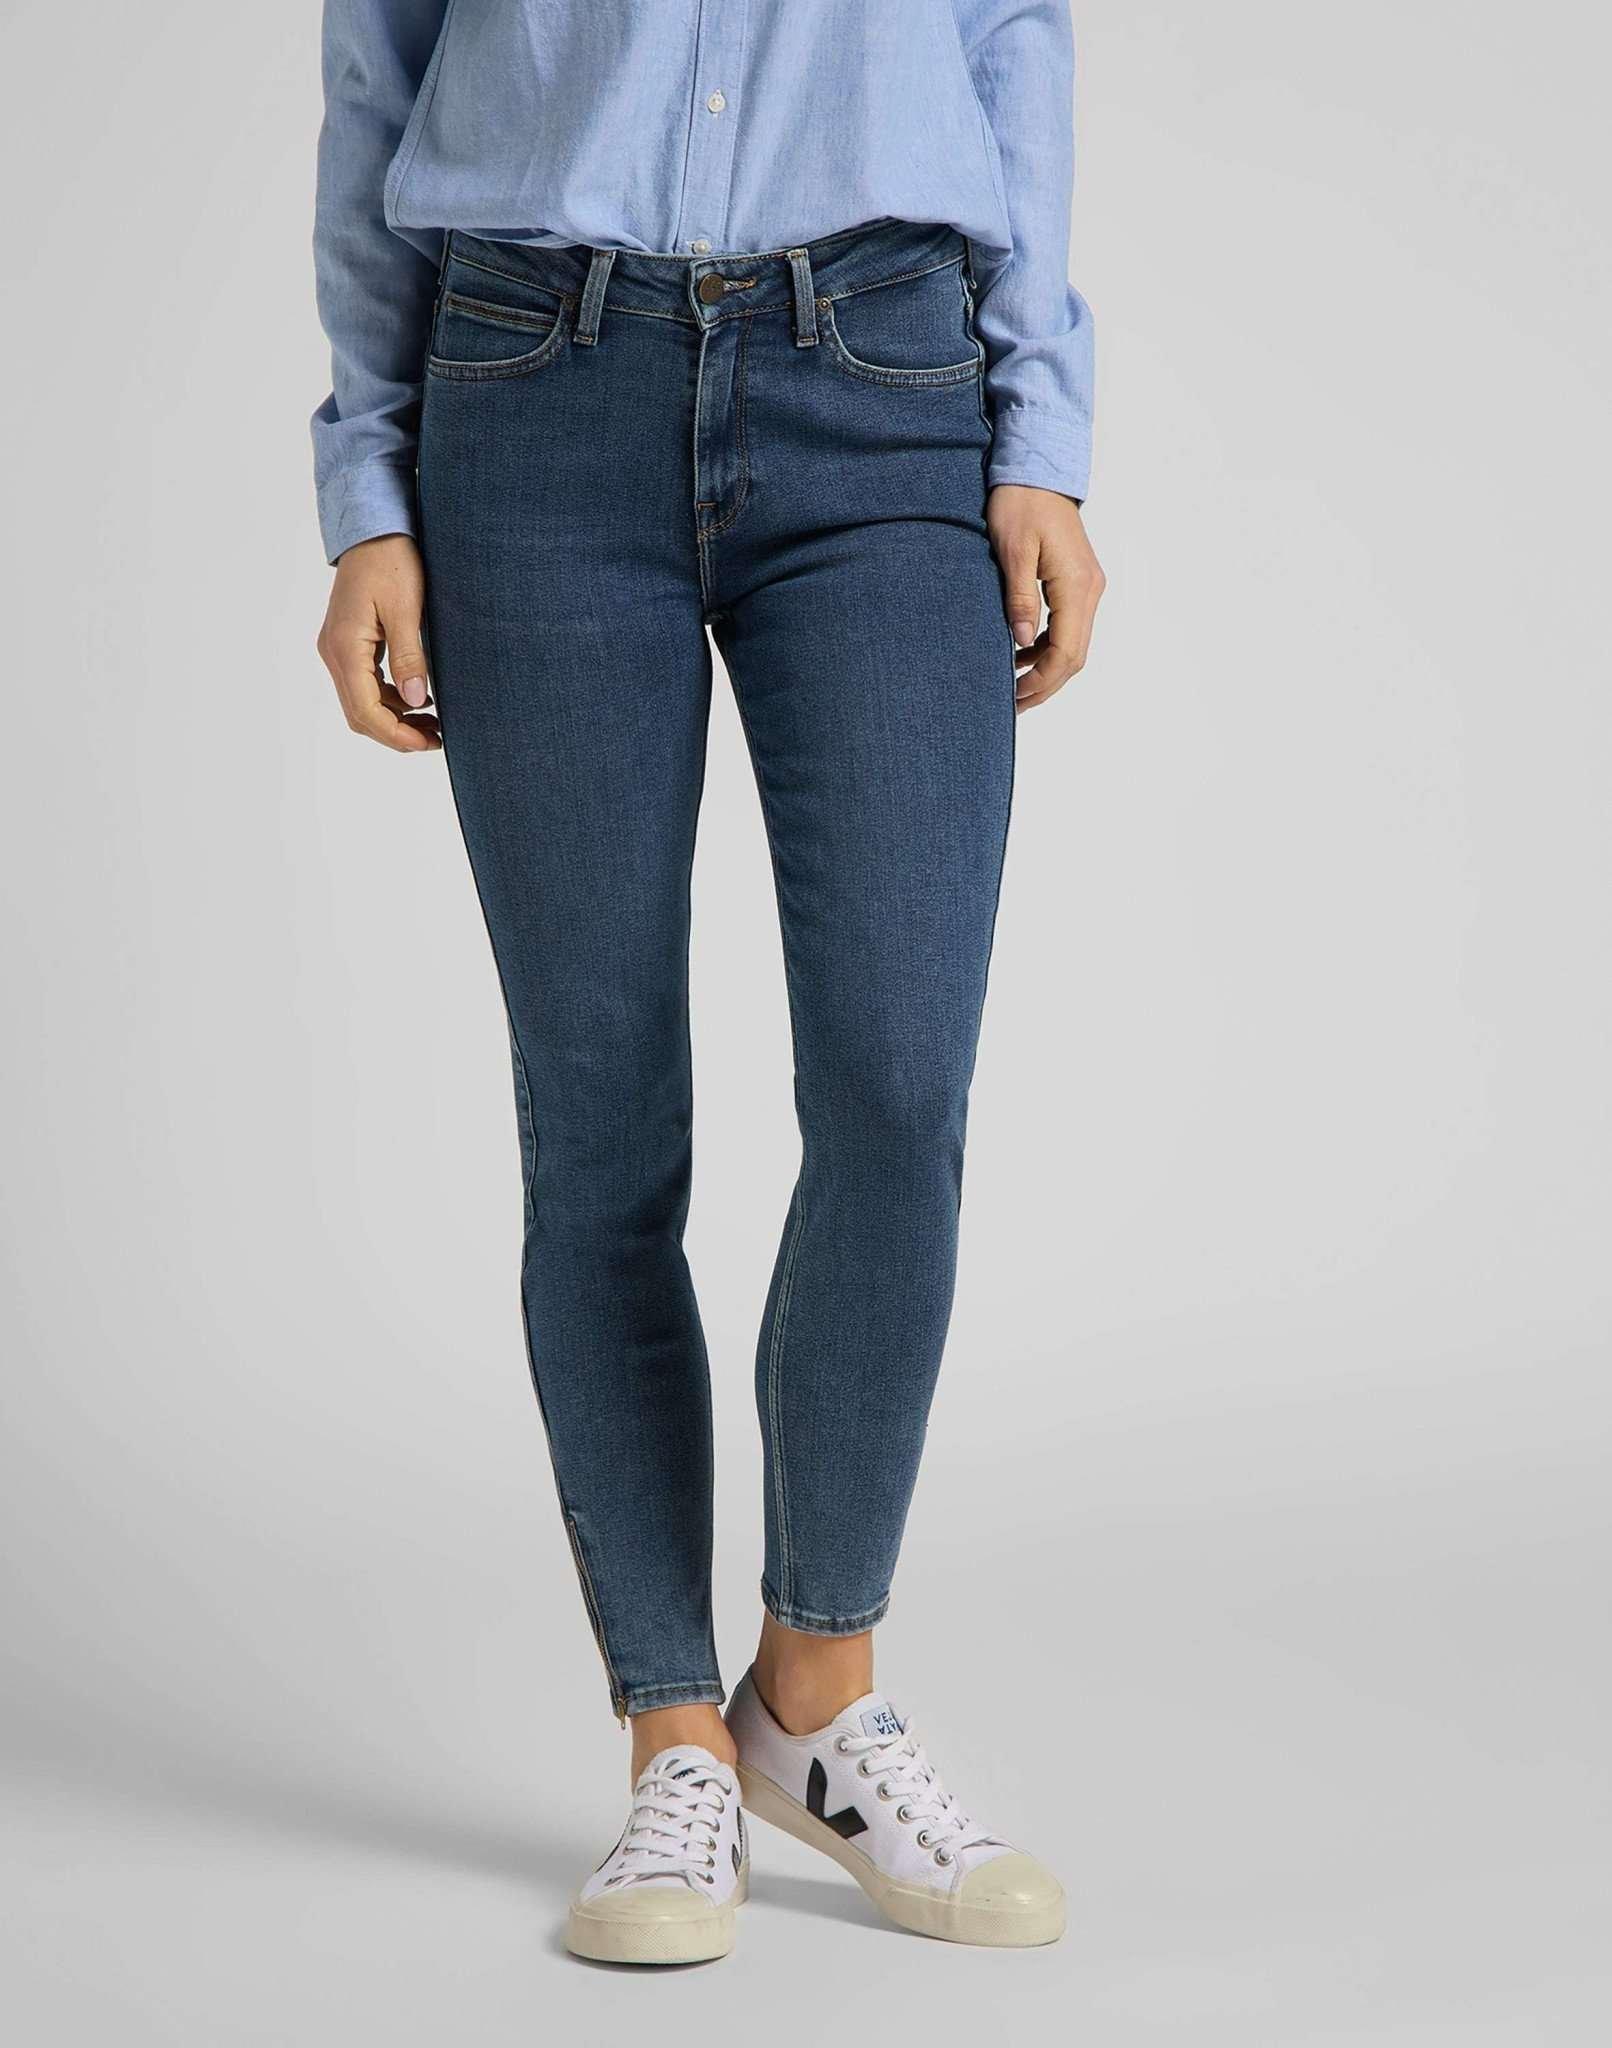 Jeans Skinny Fit Scarlett High Zip Damen Blau Denim W29 von Lee